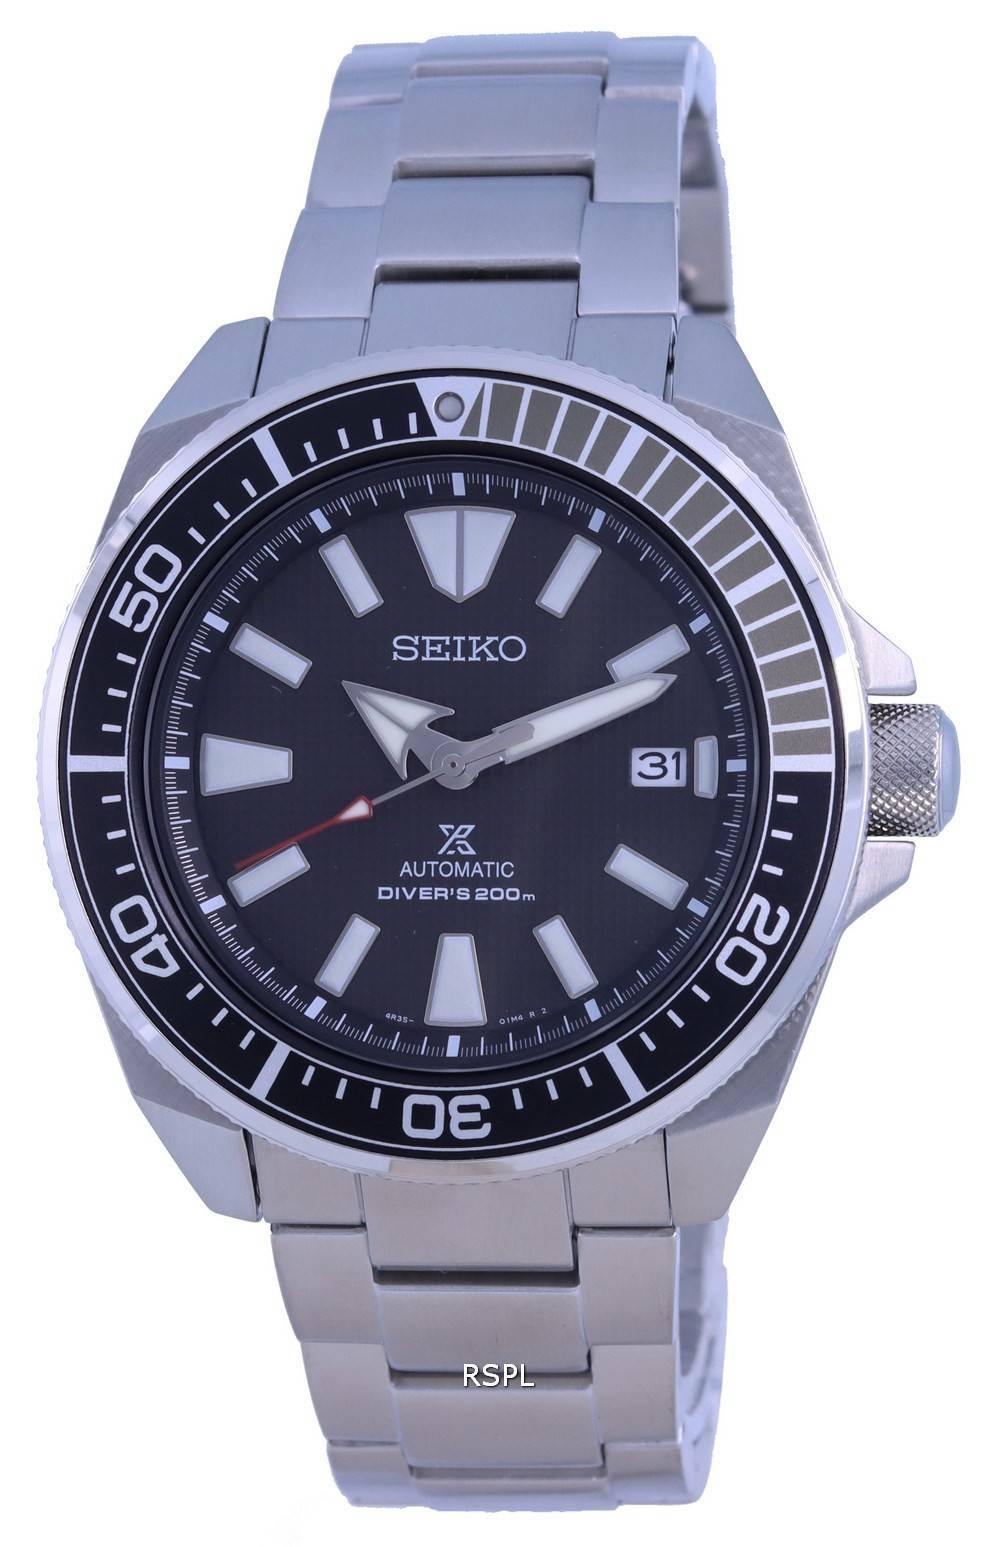 Seiko Prospex Samurai Automatic Divers SRPF03 SRPF03K1 SRPF03K 200M Mens Watch